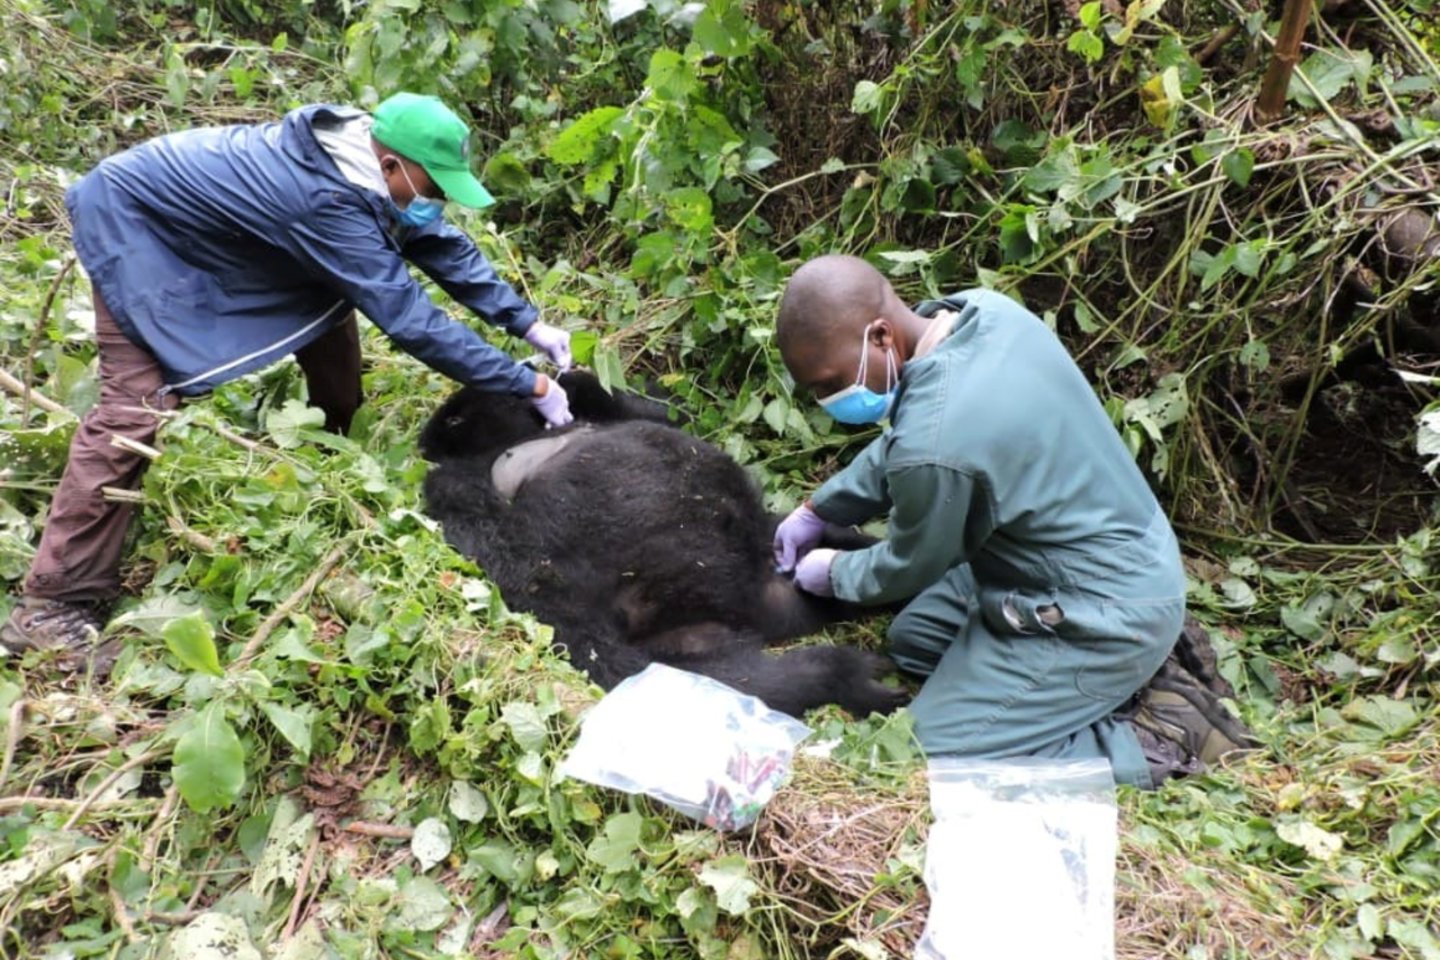  ​Kongo Demokratinės Respublikos Virungos nacionaliniame parke sekmadienį per užpuolimą buvo nužudyti mažiausiai šeši parko prižiūrėtojai, pranešė pareigūnai, kurie kaltino vieną ginkluotą grupuotę.<br> Reuters/Scanpix nuotr.